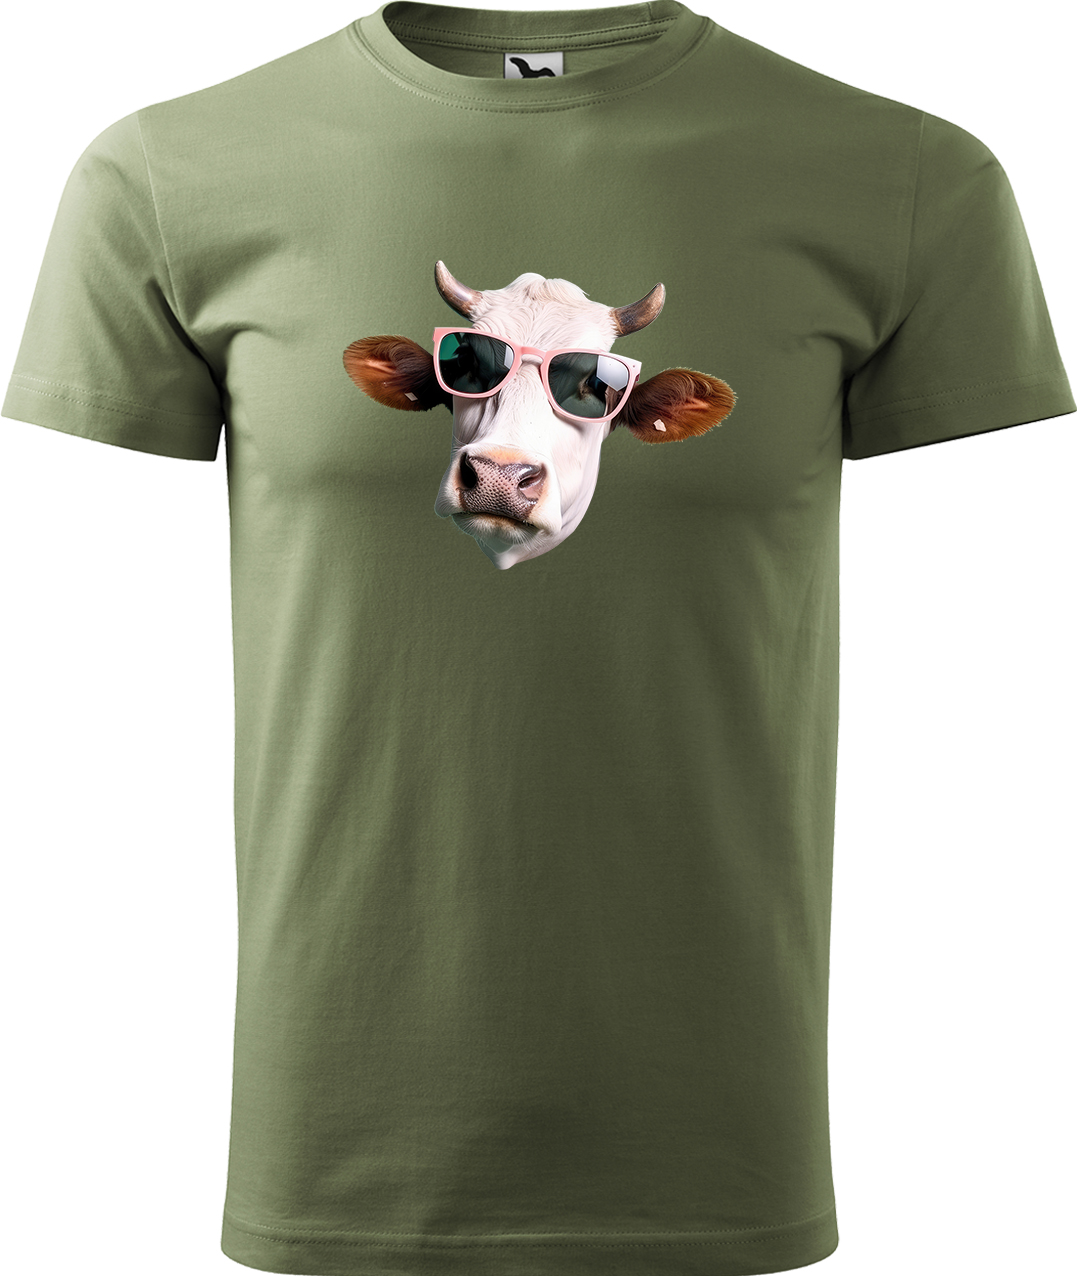 Pánské tričko s krávou - Kráva v brýlích Velikost: XL, Barva: Světlá khaki (28), Střih: pánský